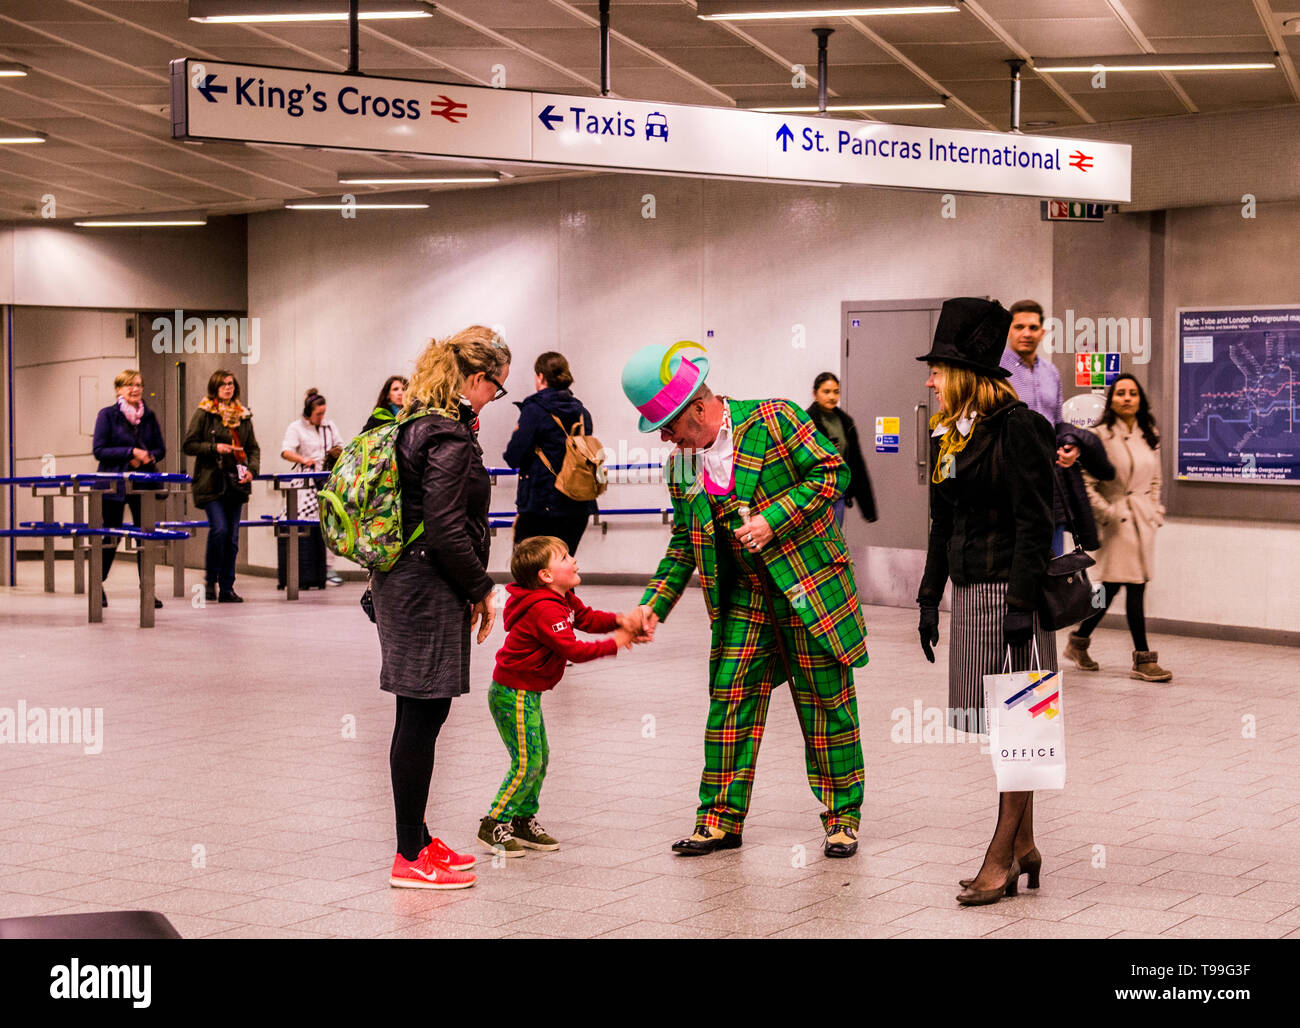 Junges Kind mit Mutter, Händeschütteln mit Mann in clown Anzug gekleidet, der U-Bahnstation Kings Cross, London, England, Großbritannien Stockfoto